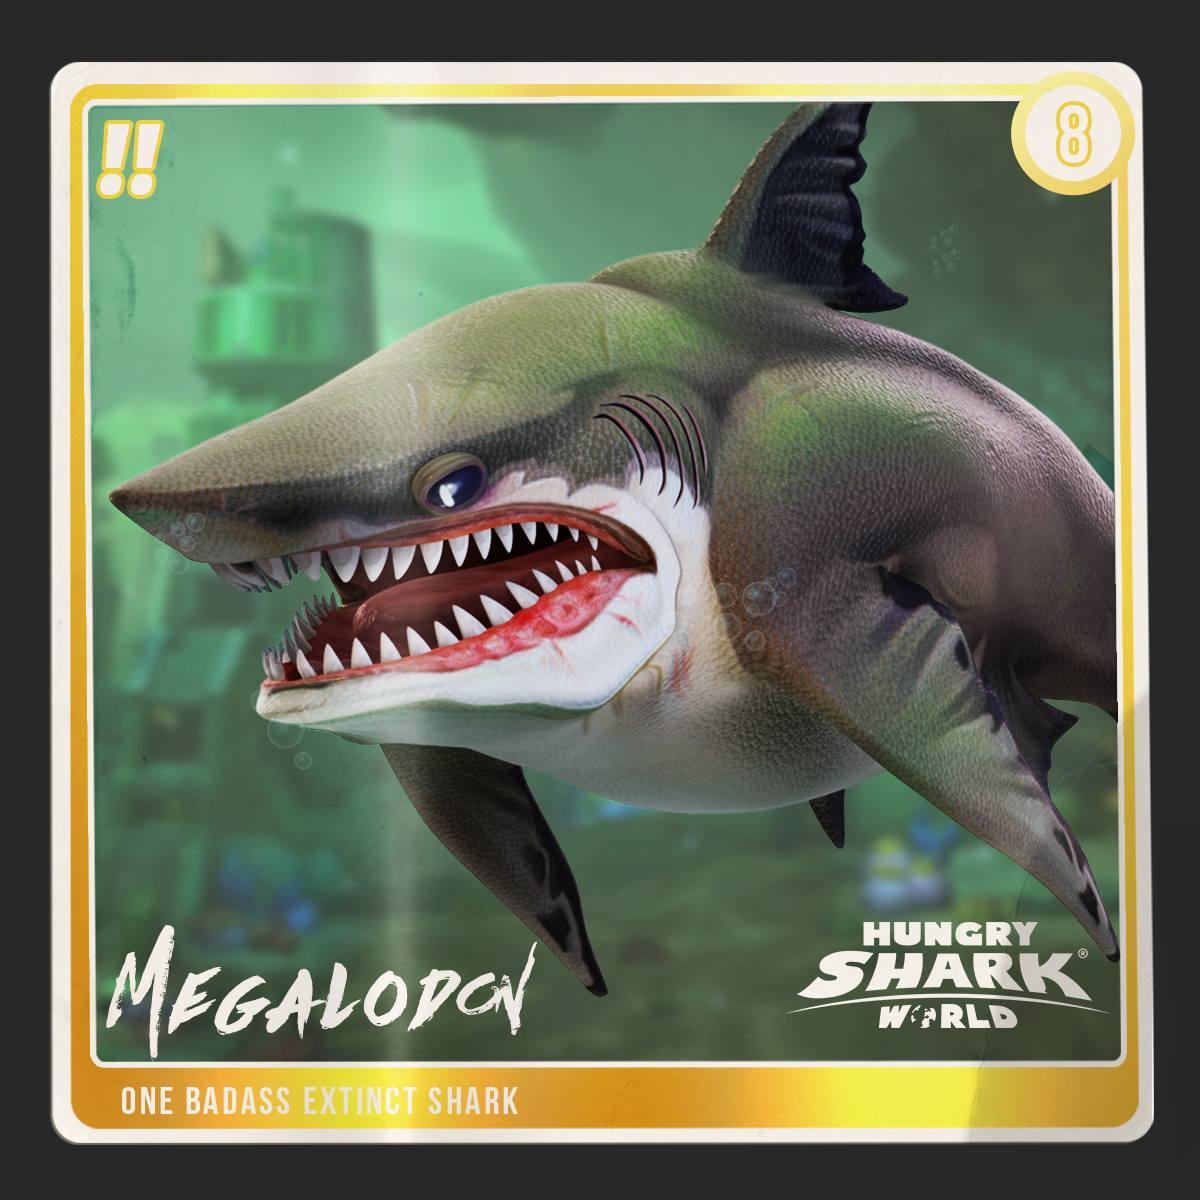 shark evolution megalodon